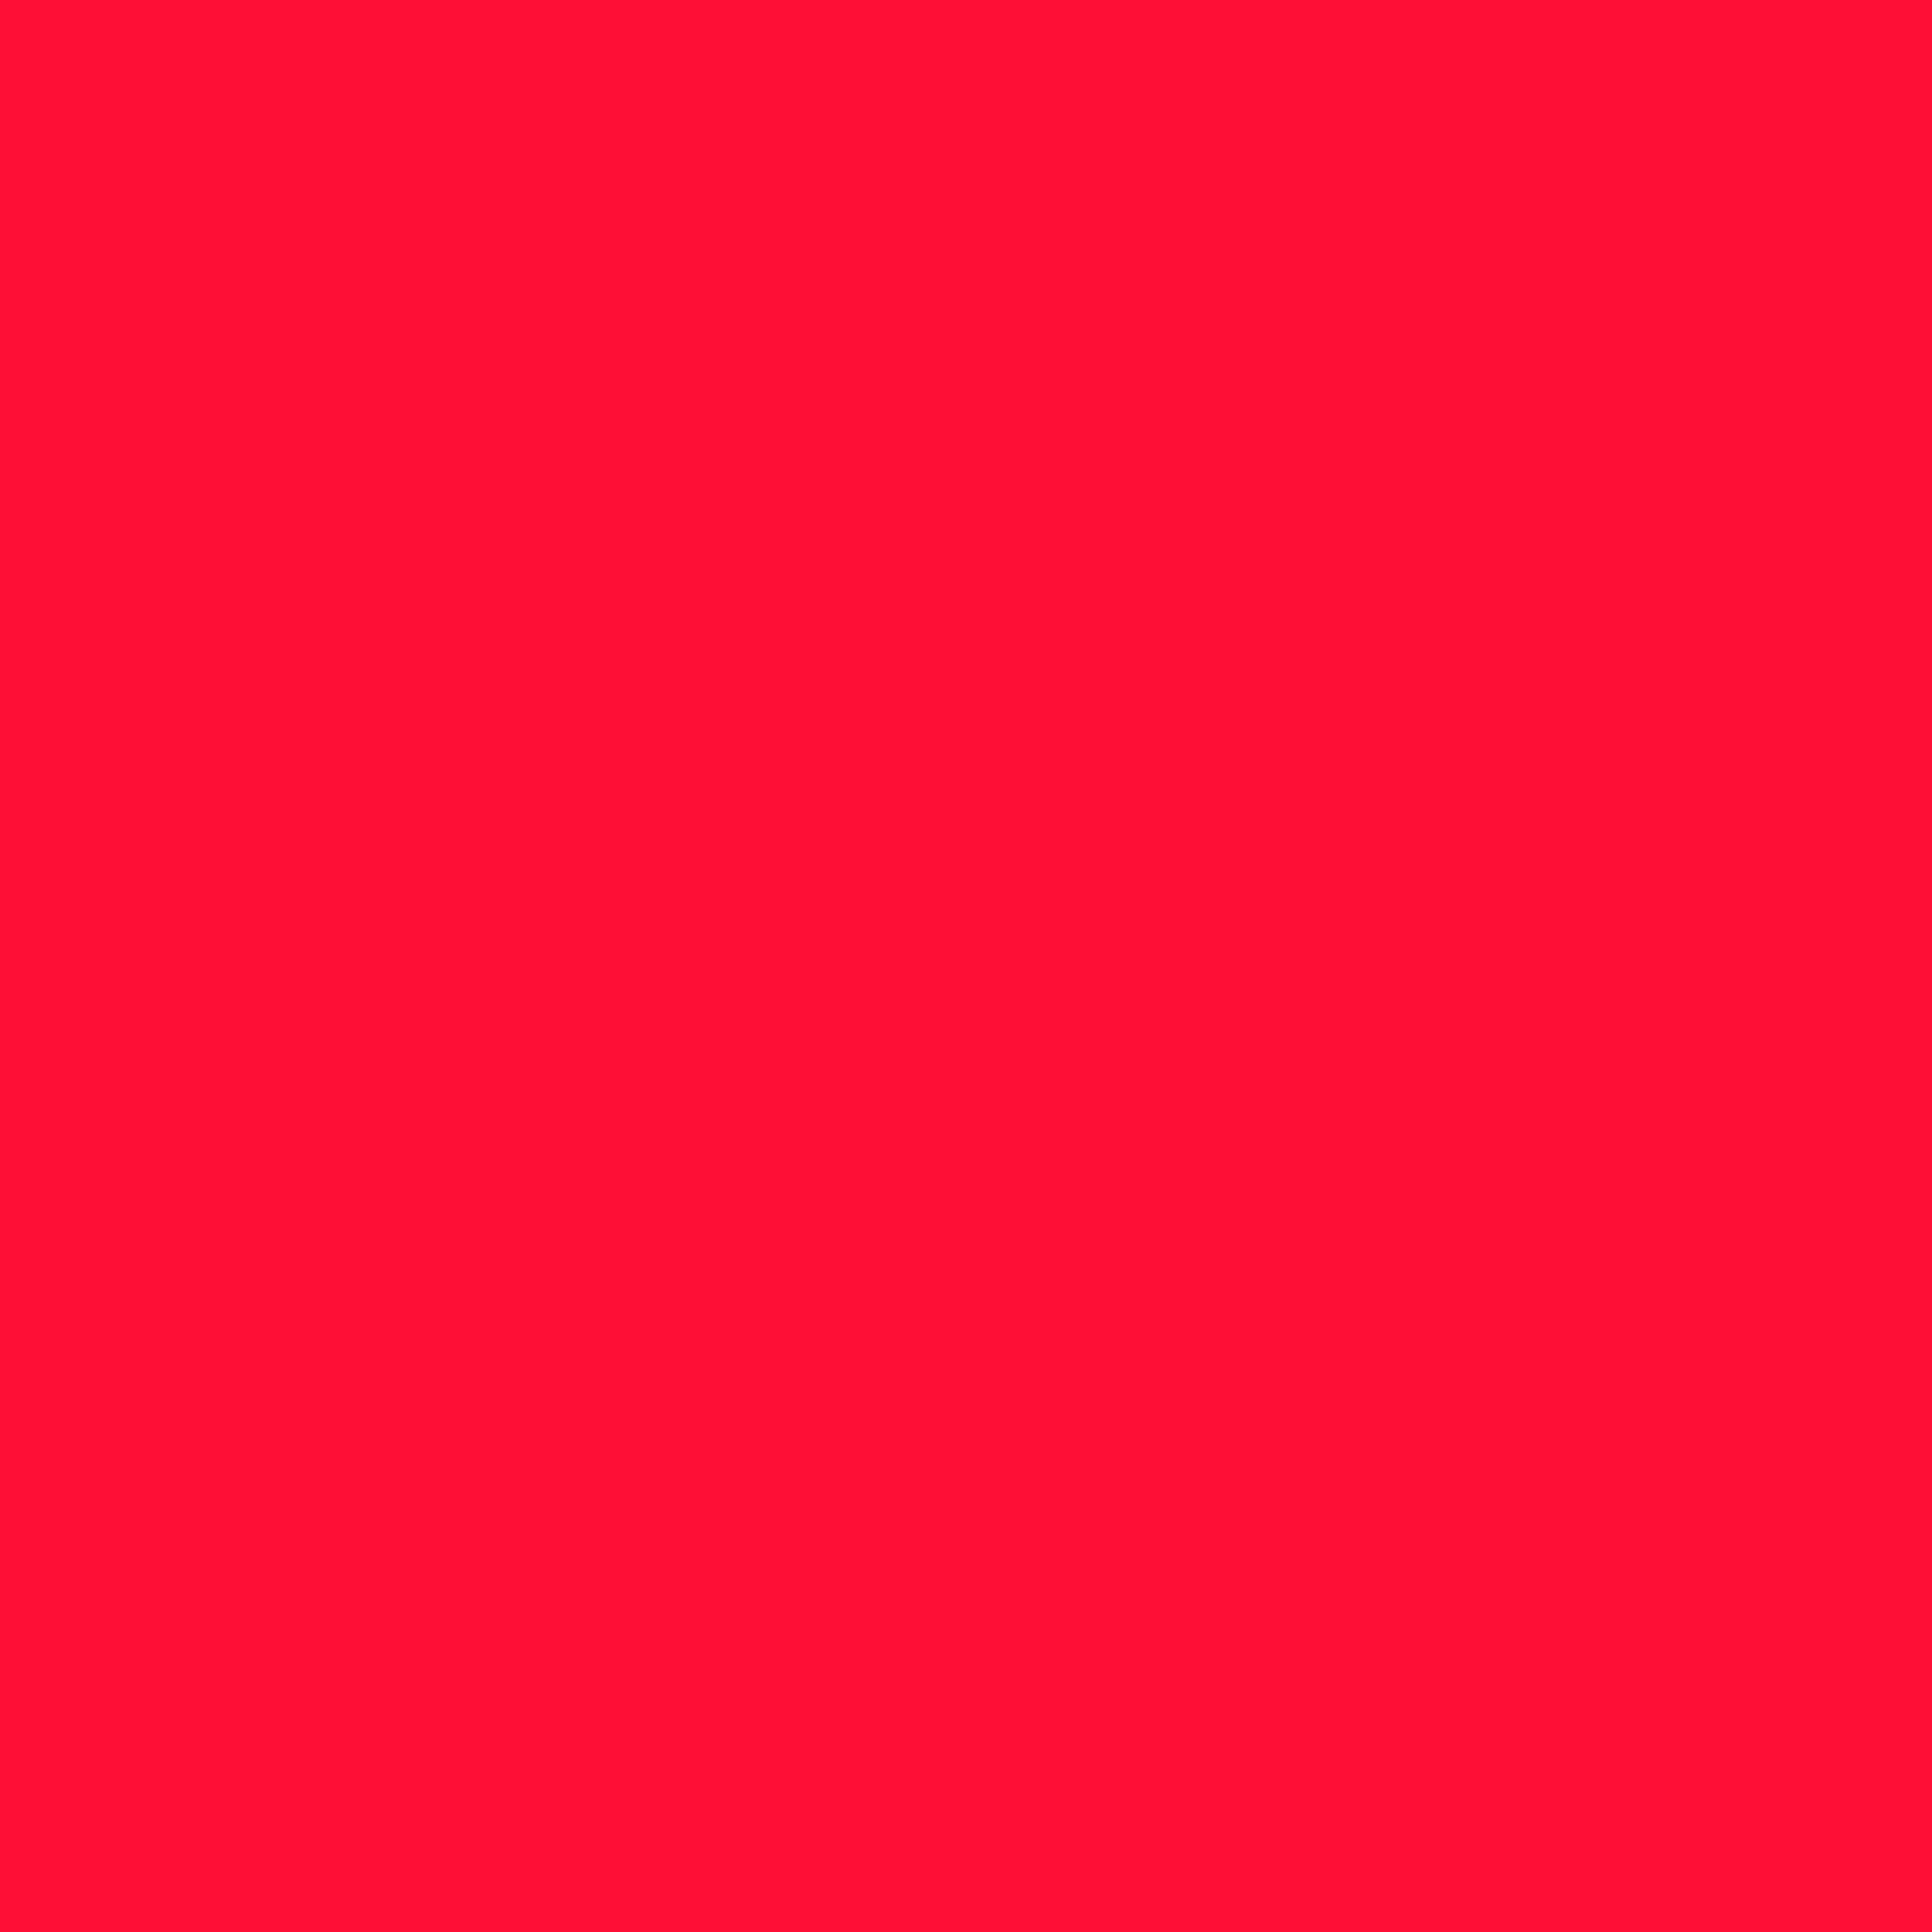 2732x2732 Scarlet Crayola Solid Color Background